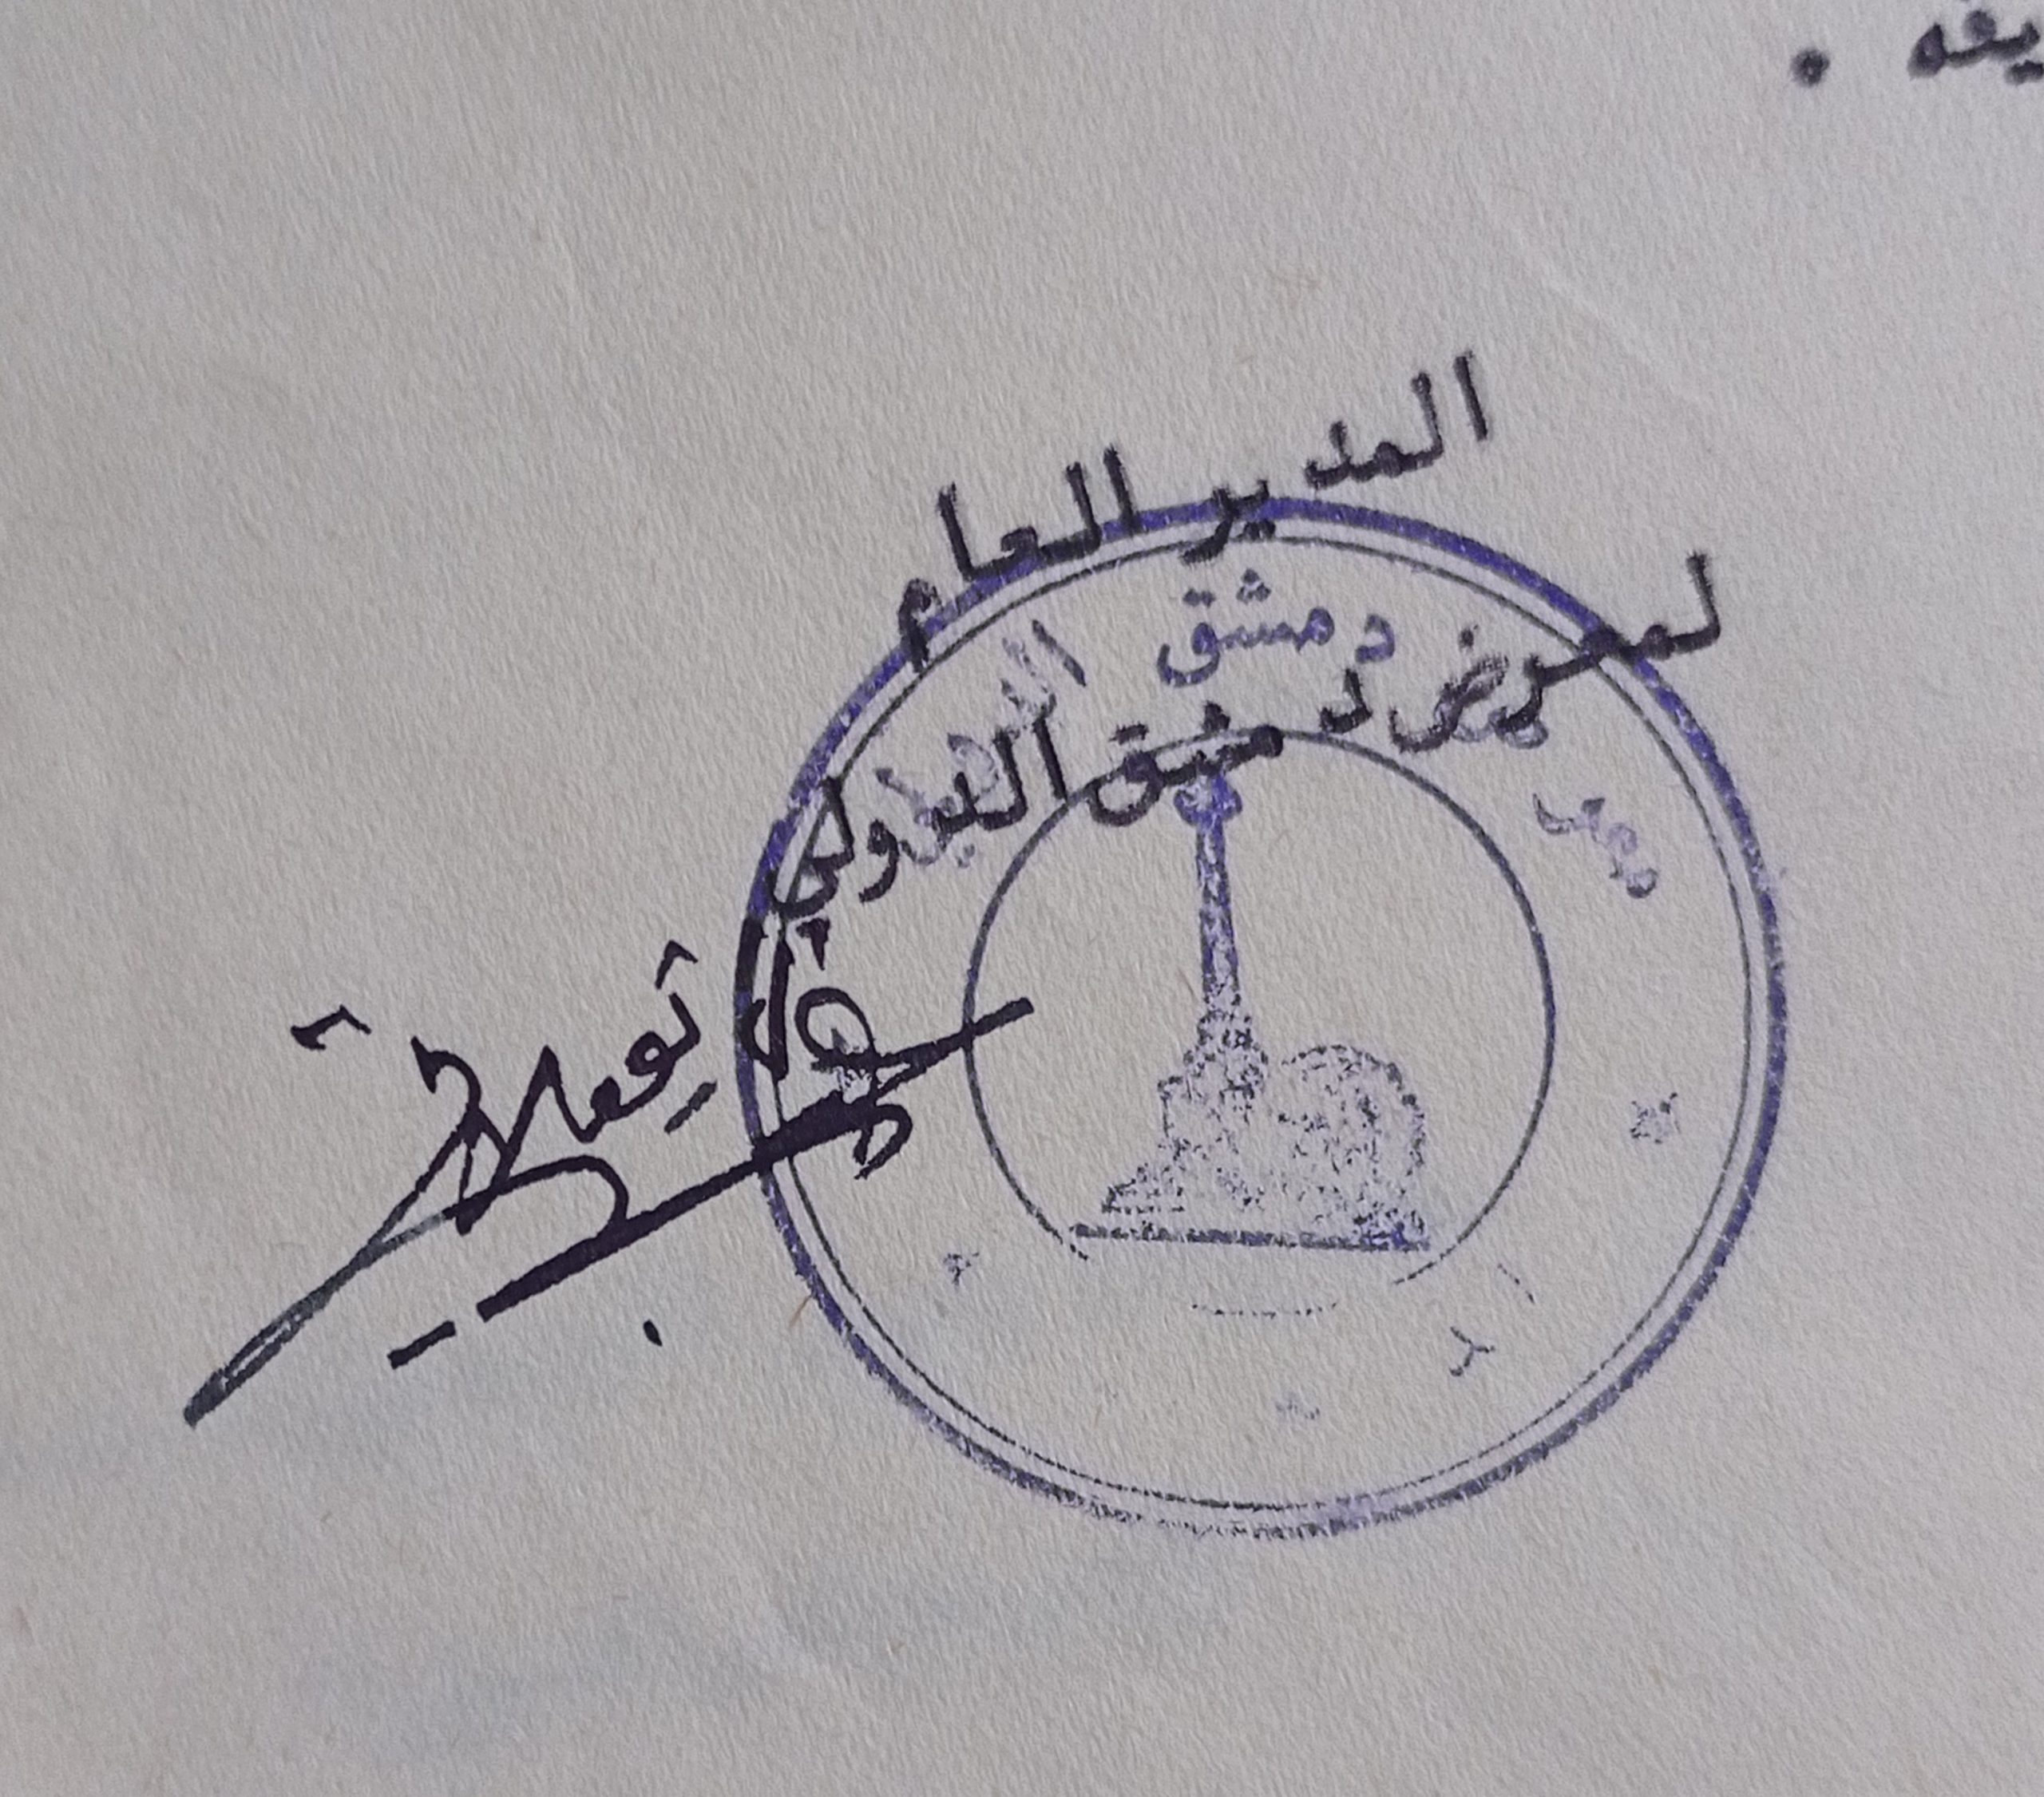 التاريخ السوري المعاصر - توقيع عبد الستار نويلاتي المدير العام لمعرض دمشق الدولي